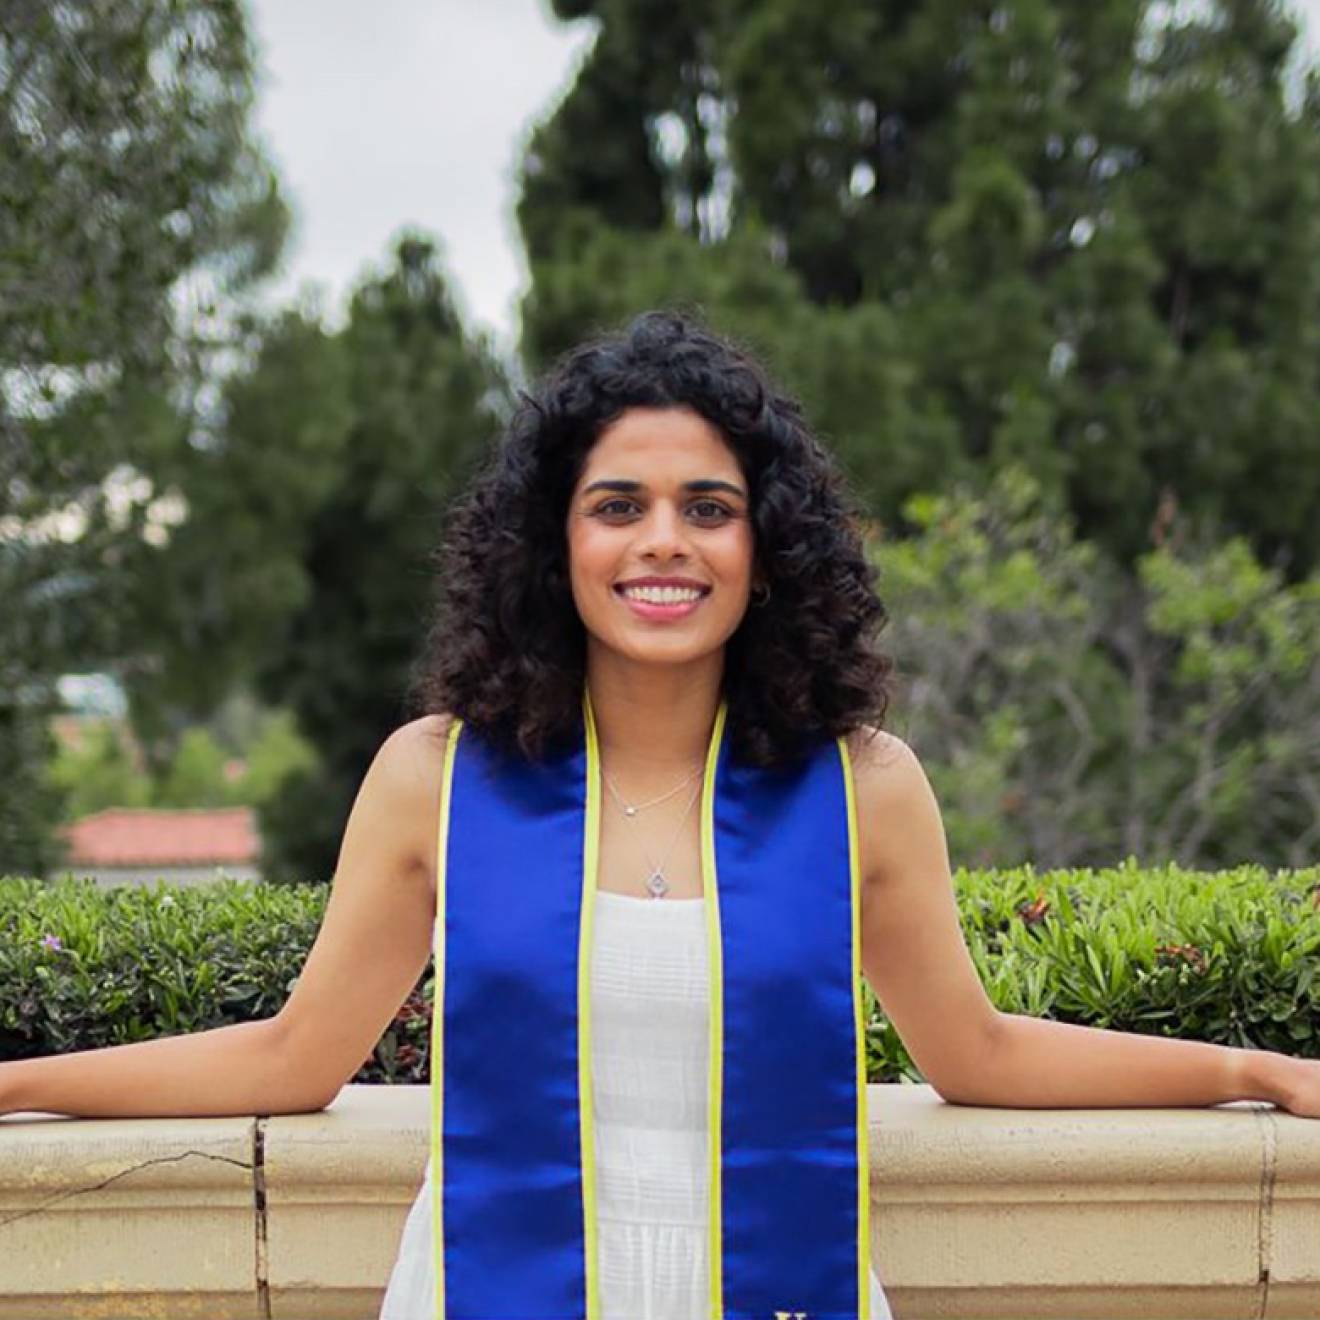 Meera Varma, at her UCLA graduation